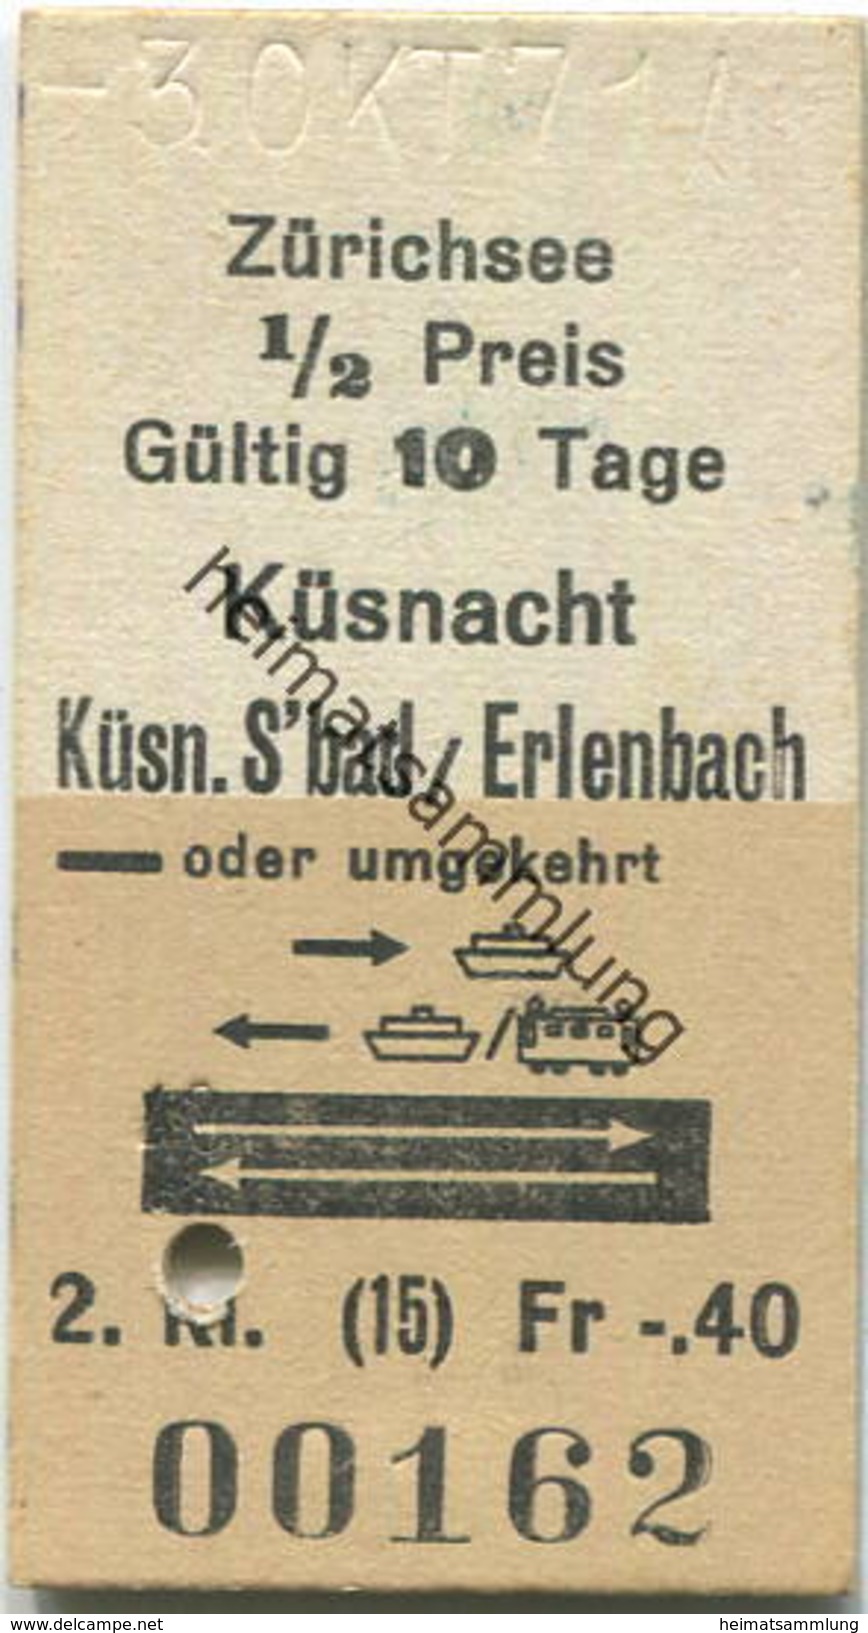 Schweiz - Zürichsee - Küsnacht - Küsn.S'bad / Erlenbach Oder Umgekehrt - Fahrkarte 1971 - Europa